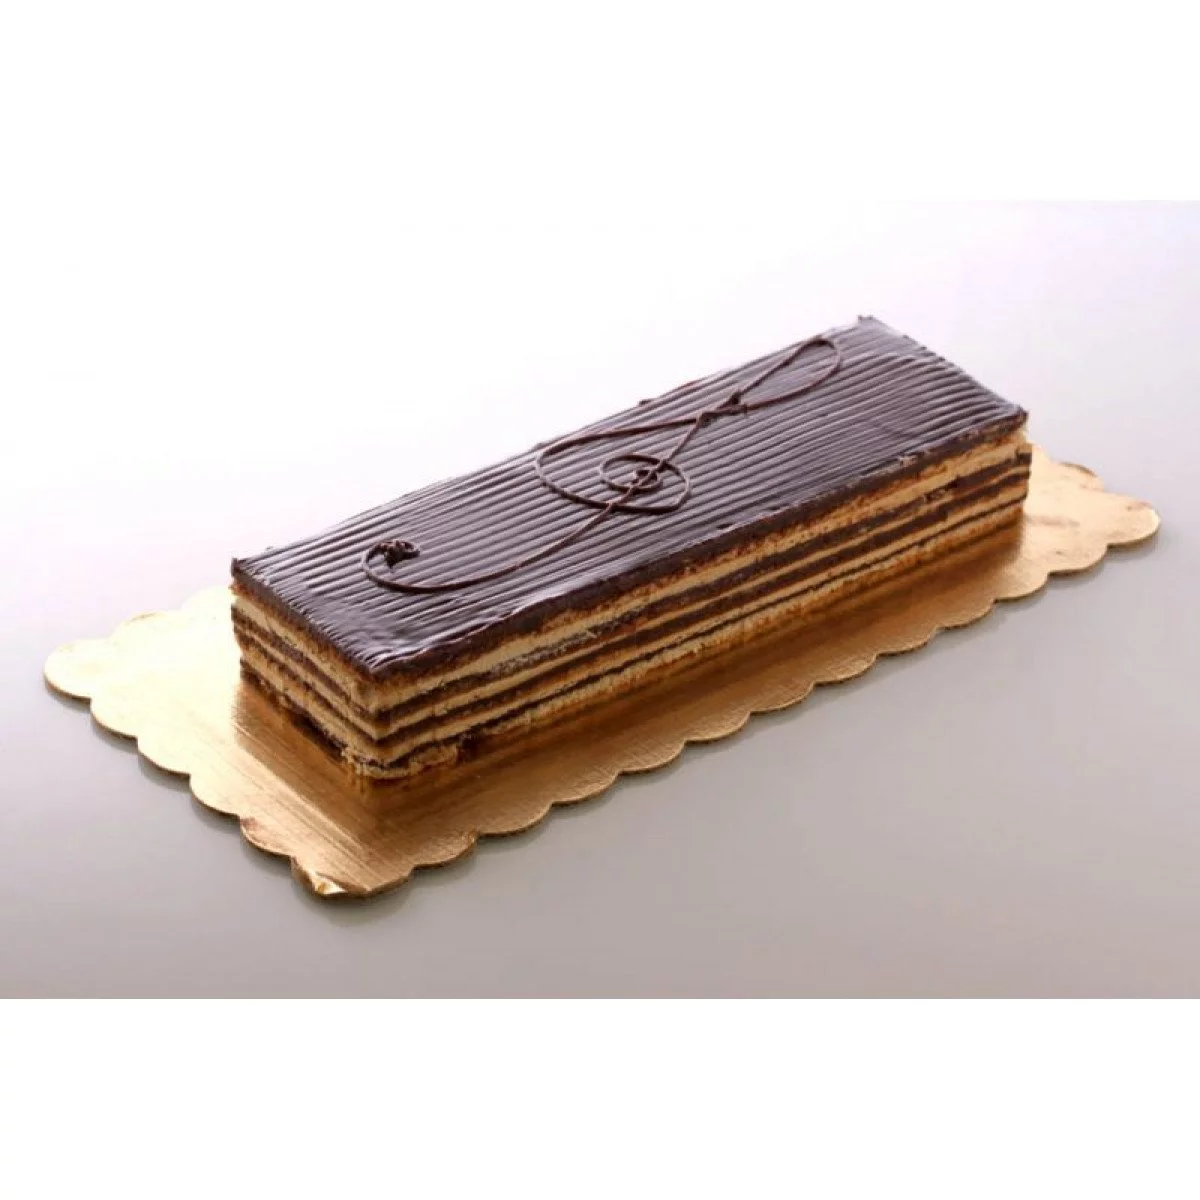 La torta Ópera: un clásico con chocolate y café